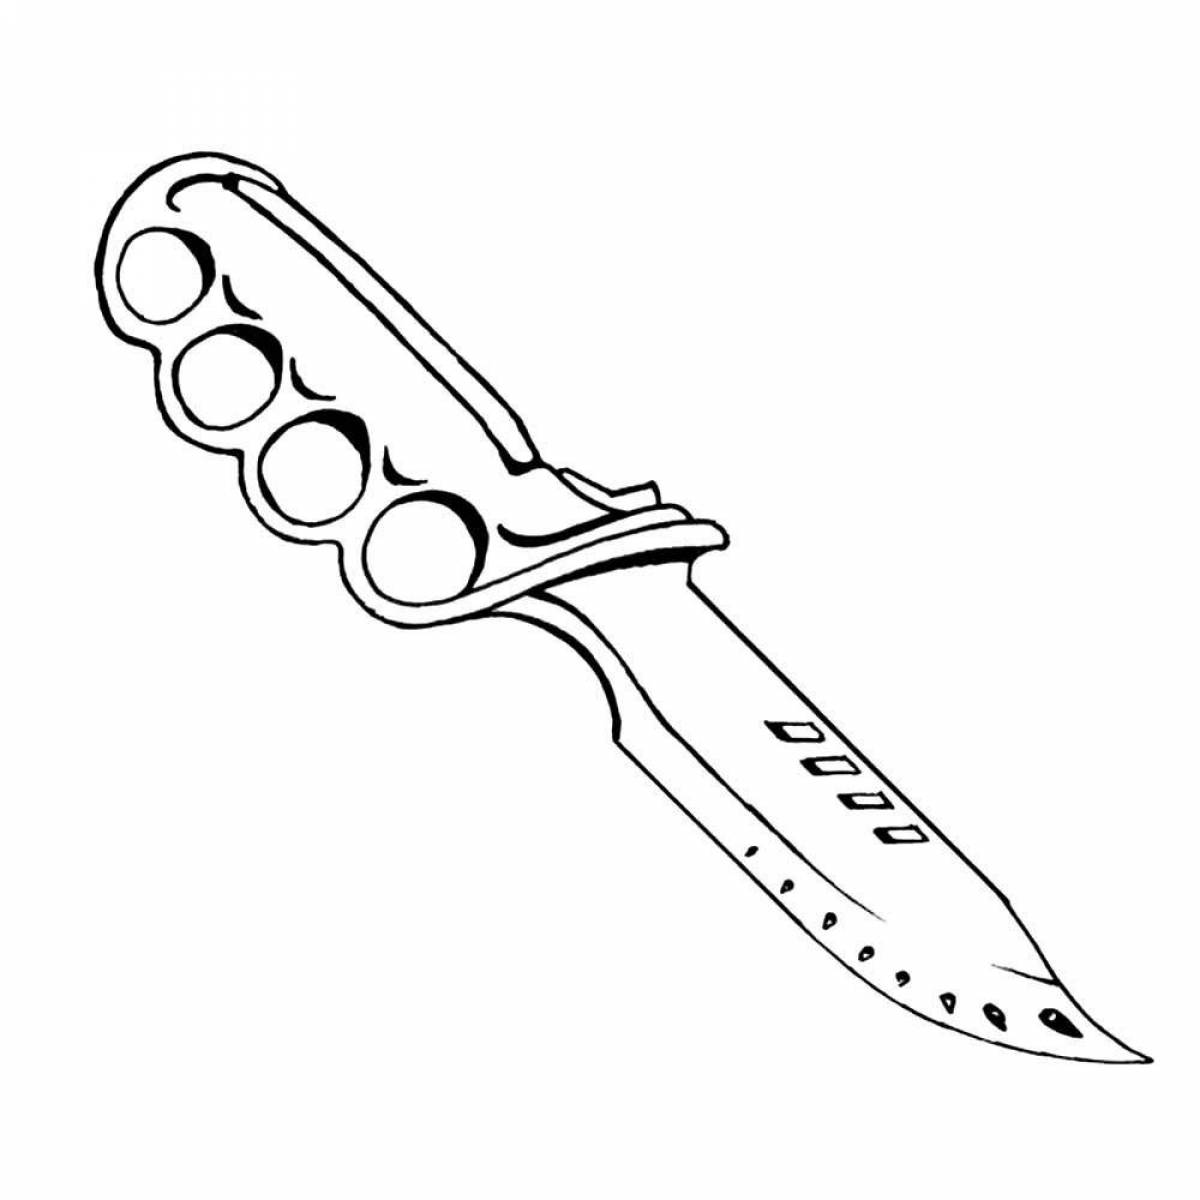 Привлекательная страница раскраски ножей